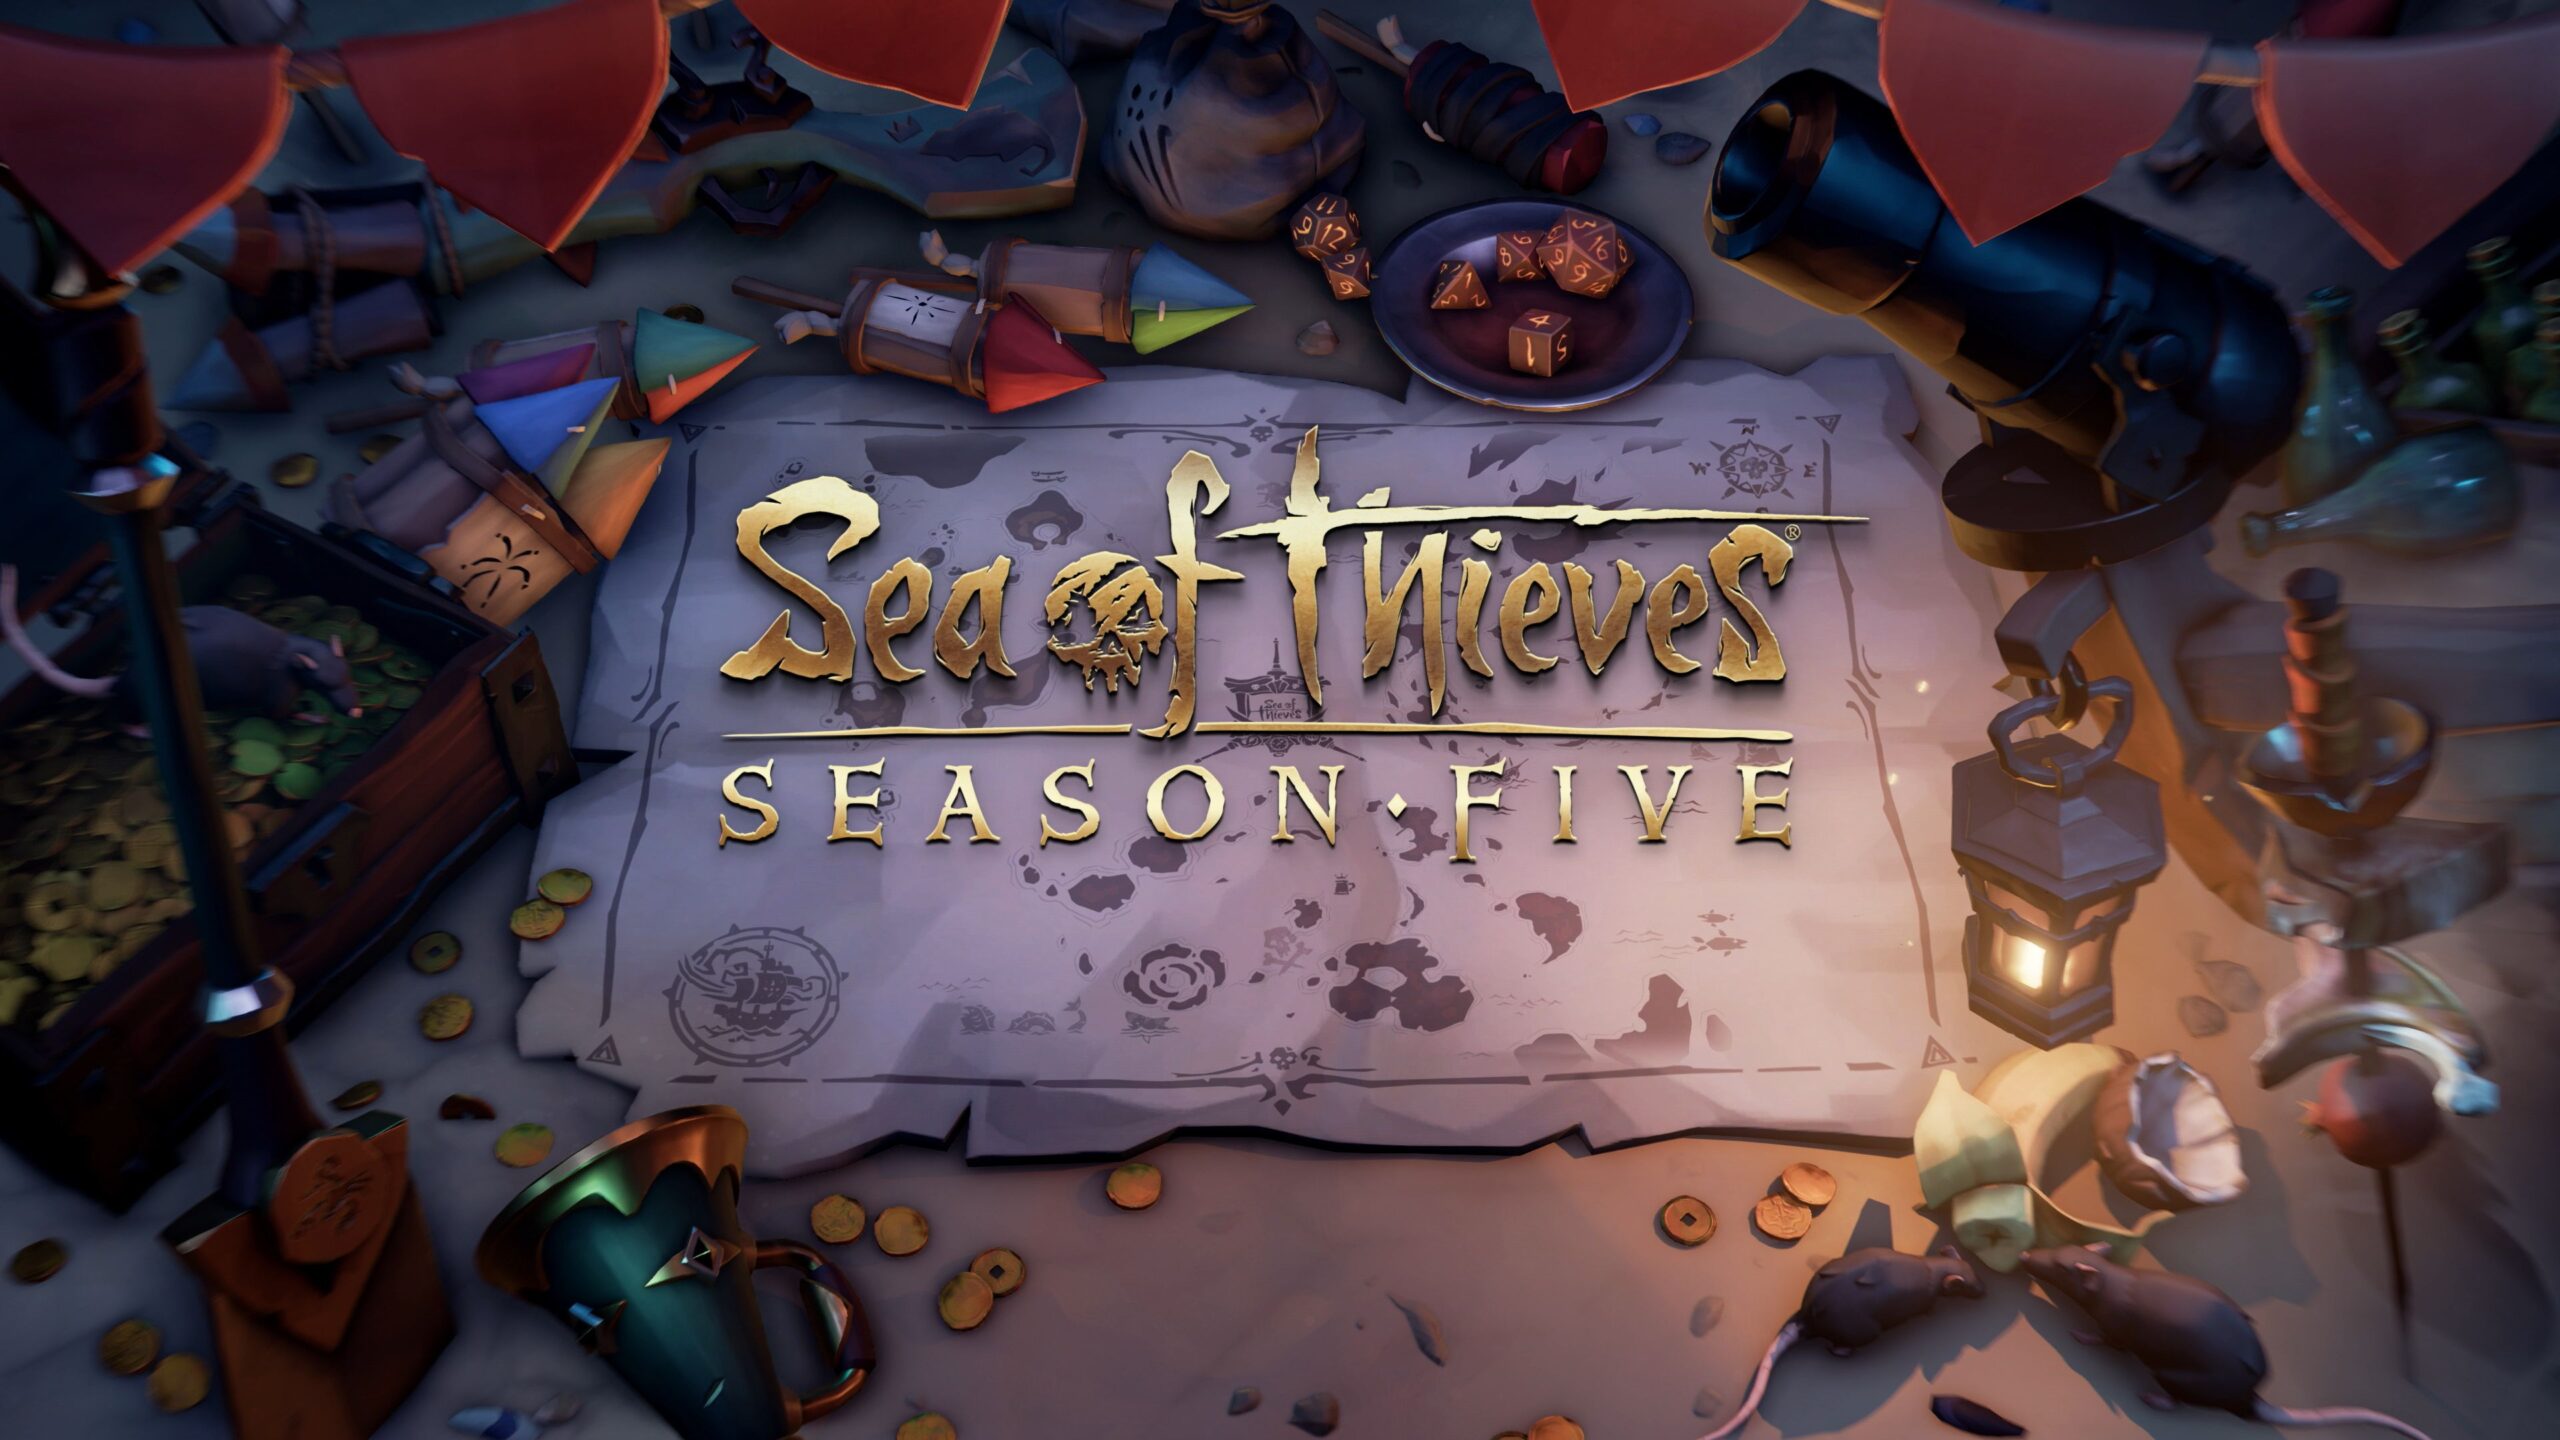 Представлен трейлер пятого сезона Sea of Thieves - он стартует на этой неделе